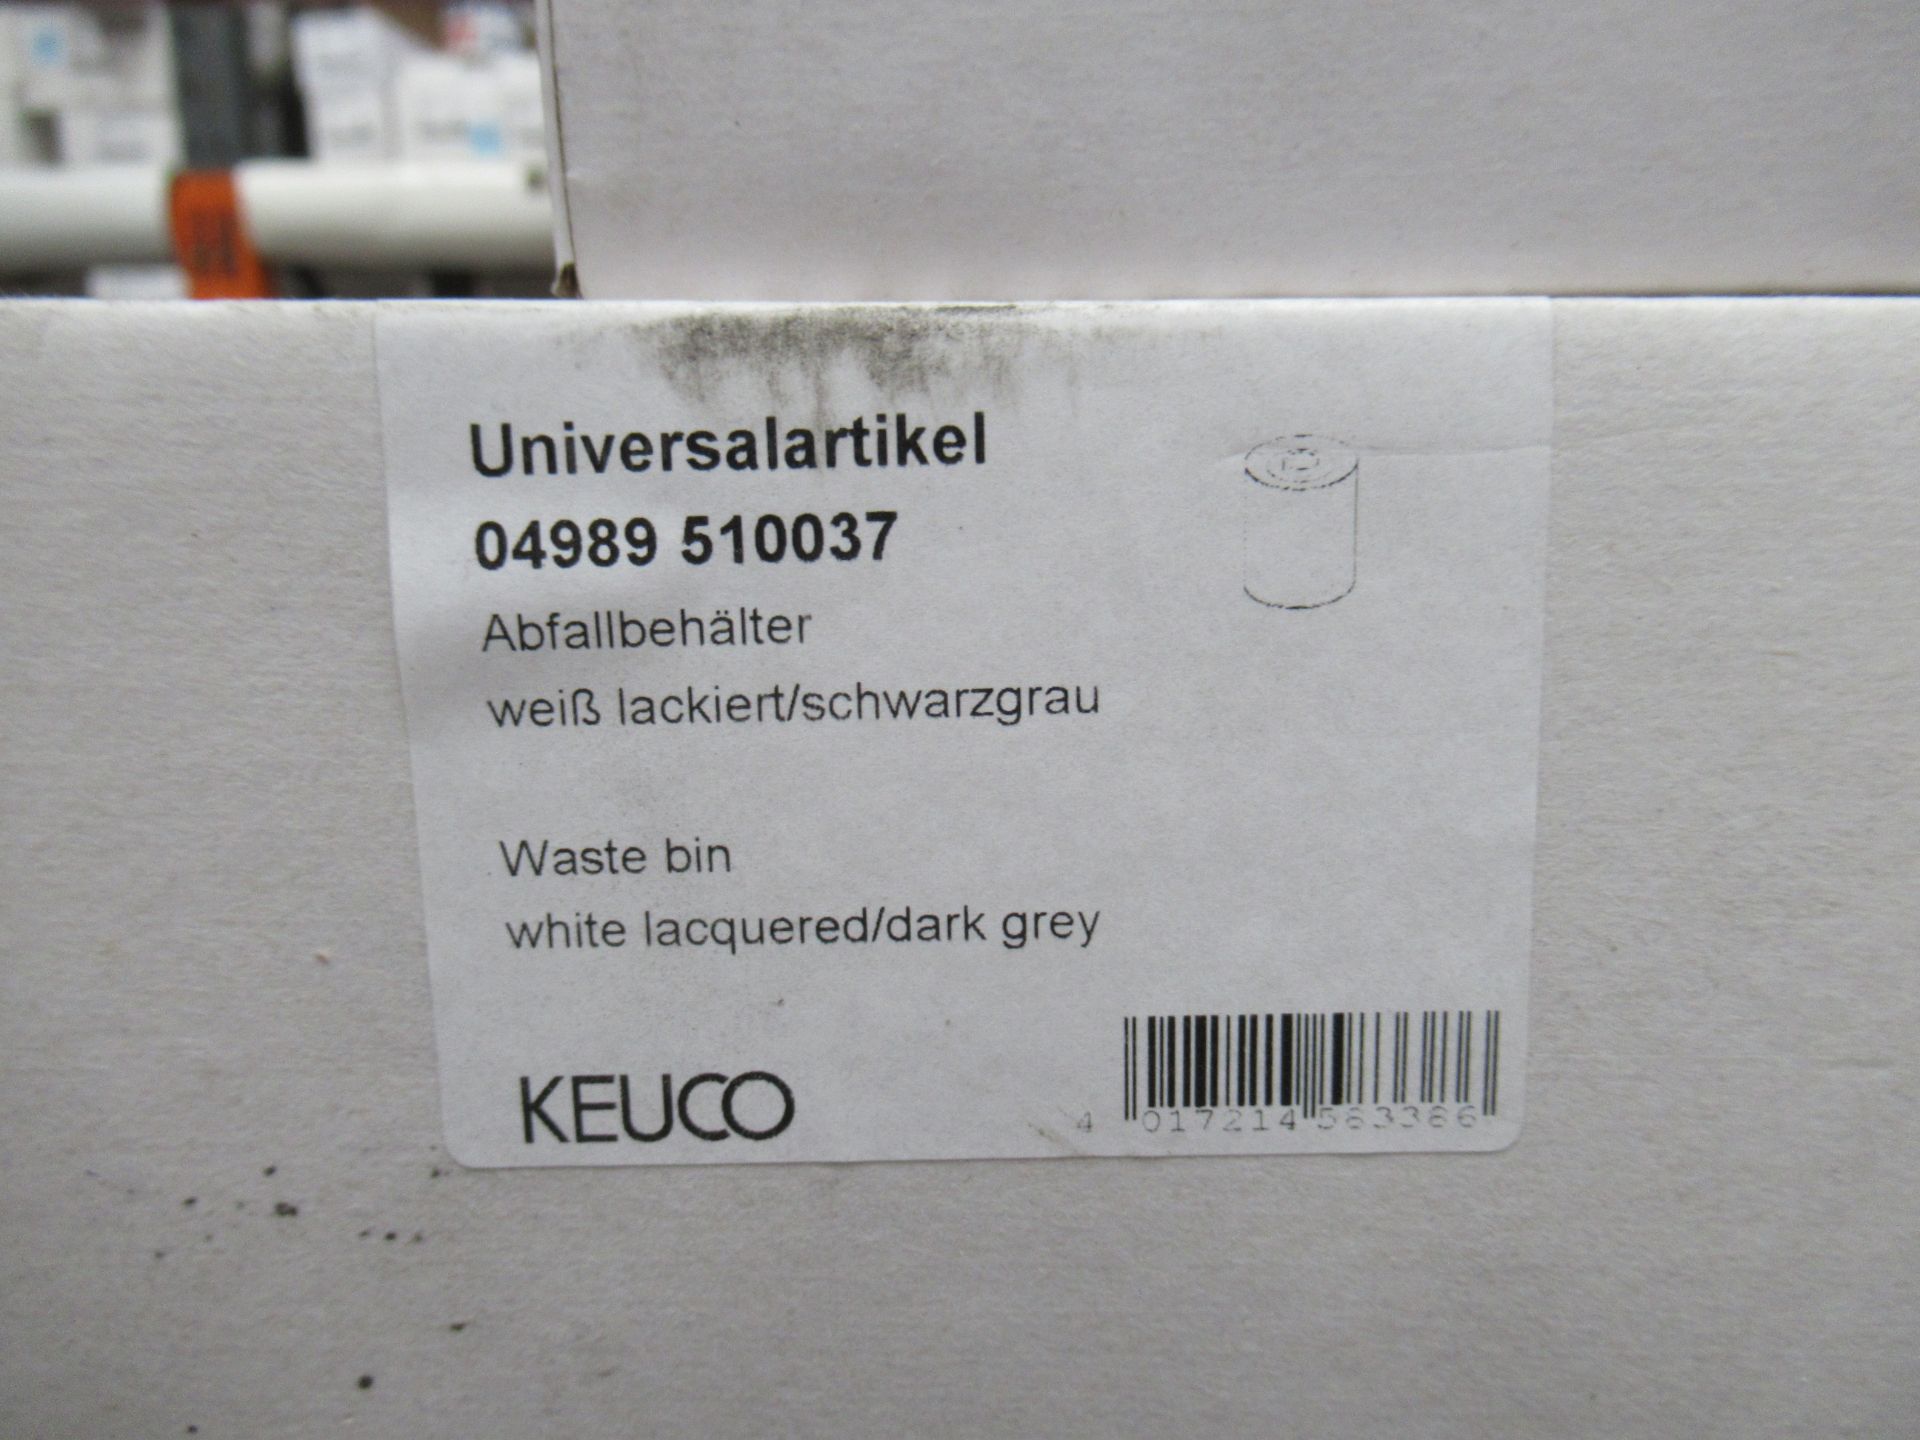 3 x Various Keuco Universal Waste Bins - Image 3 of 4